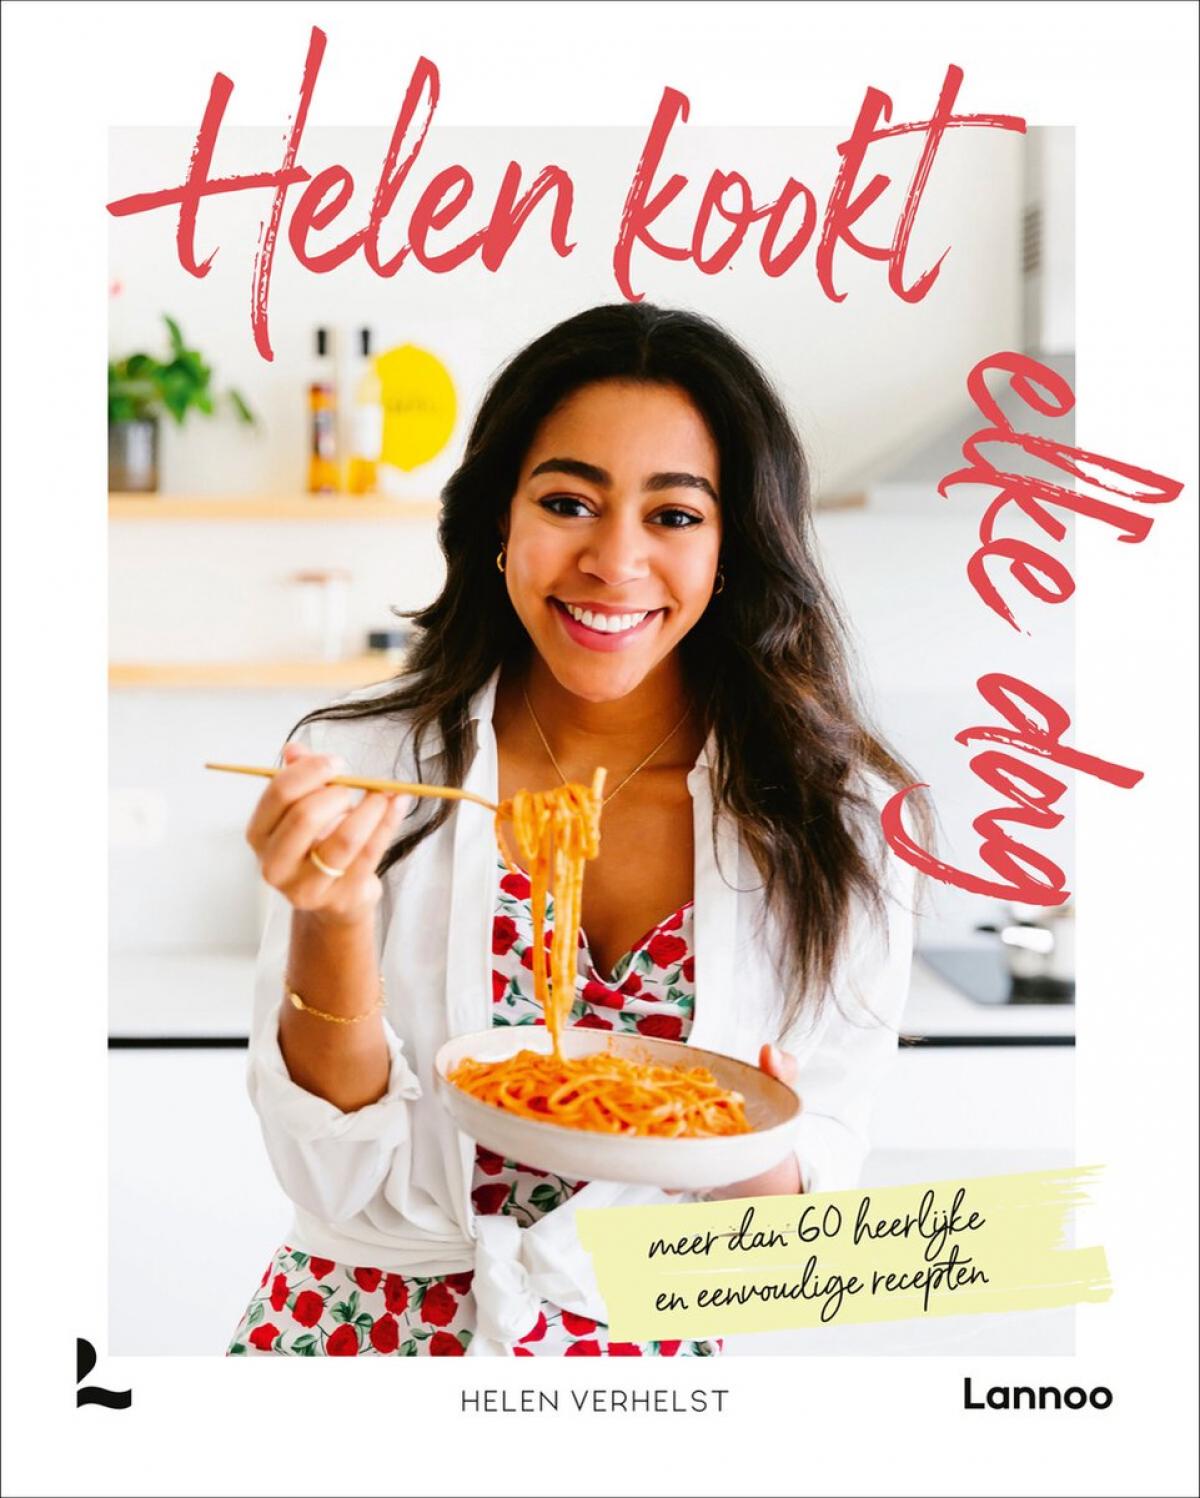 'Helen kookt elke dag' van Helen Verhelst